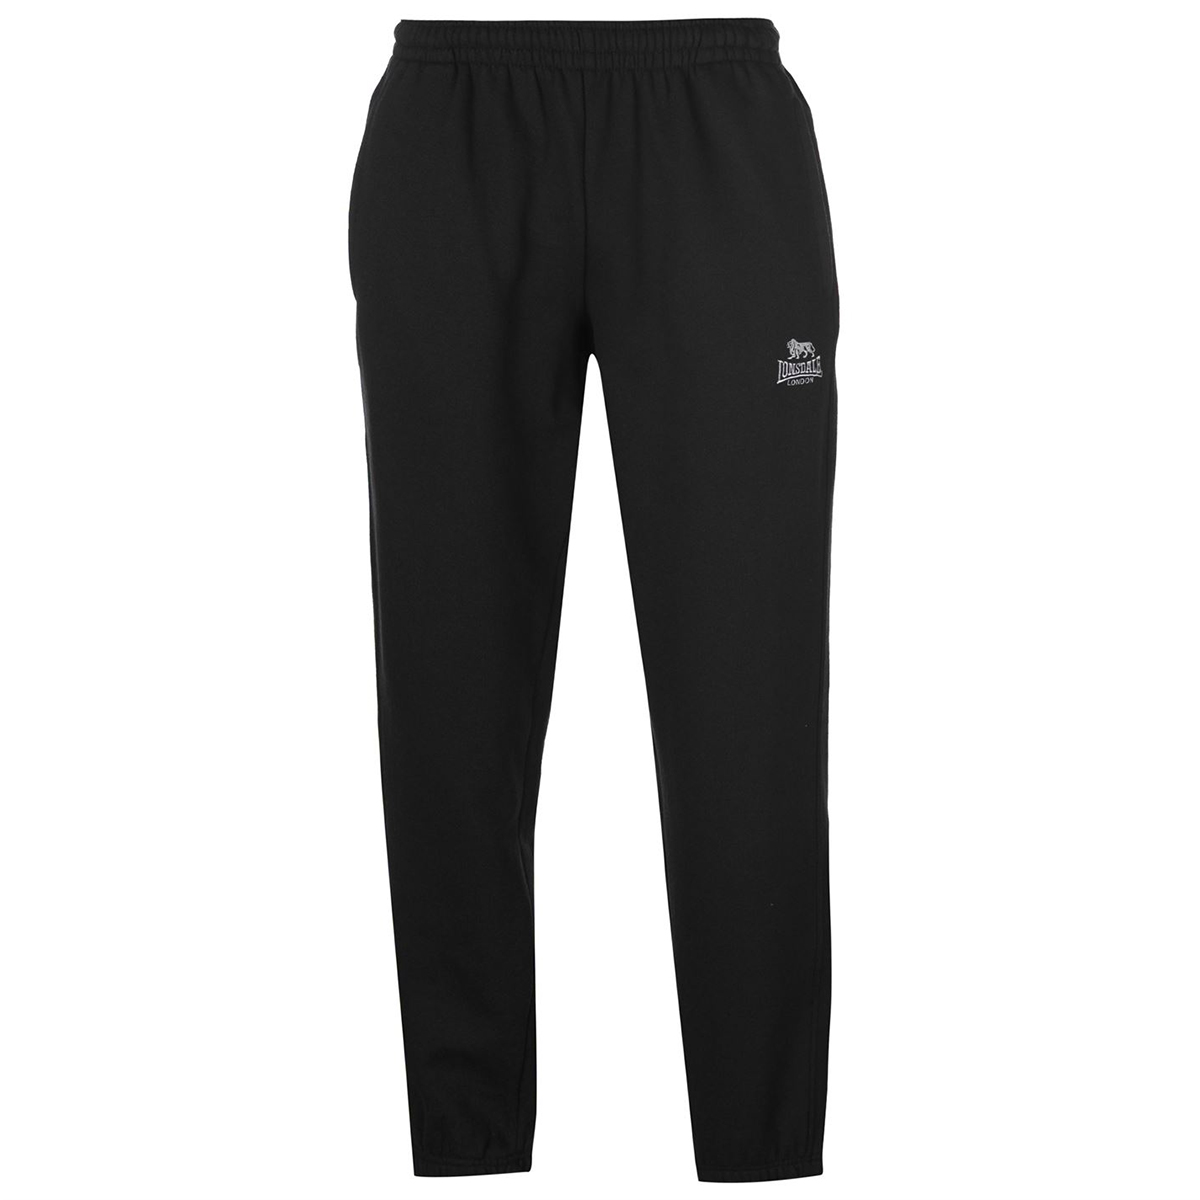 Lonsdale Men's Fleece Track Pants - Black, 4XL